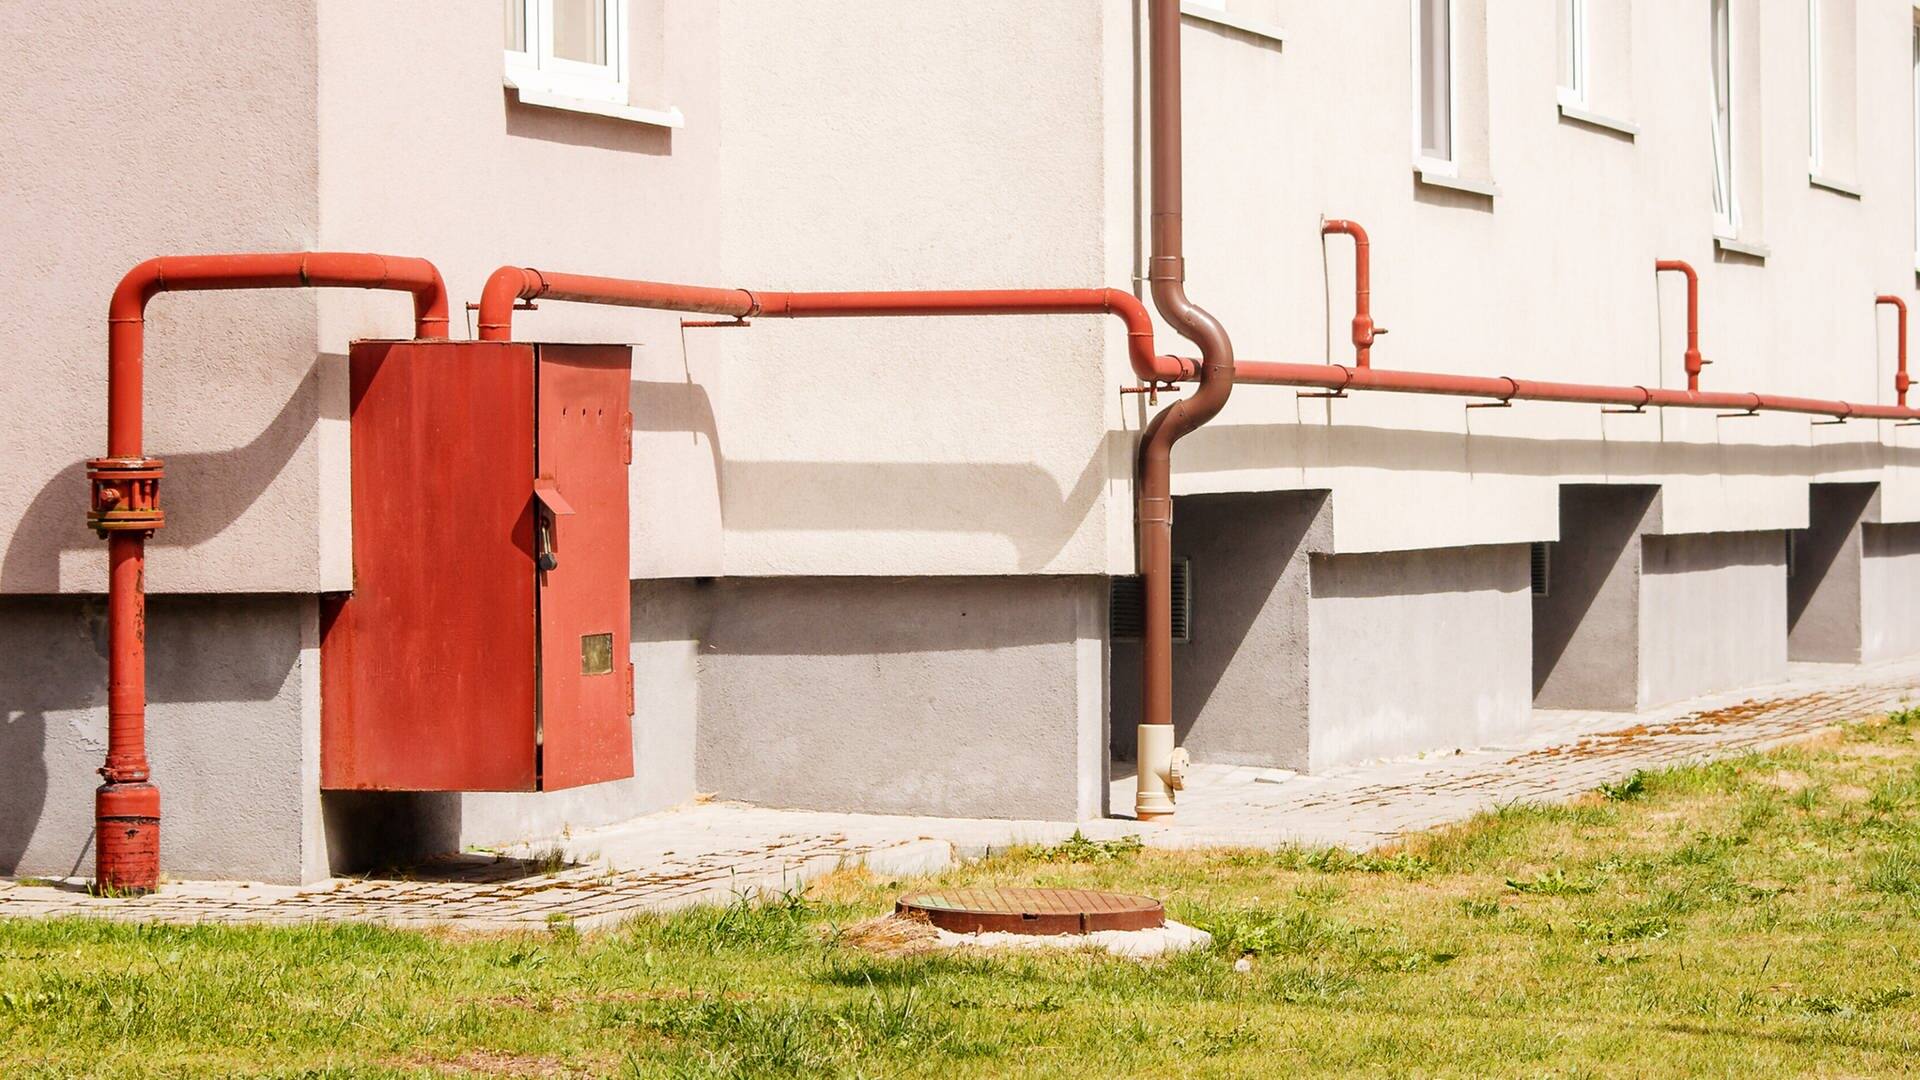 Roter Gas-Verteilerkasten an einer Hauswand (Foto: IMAGO, agefotostock)